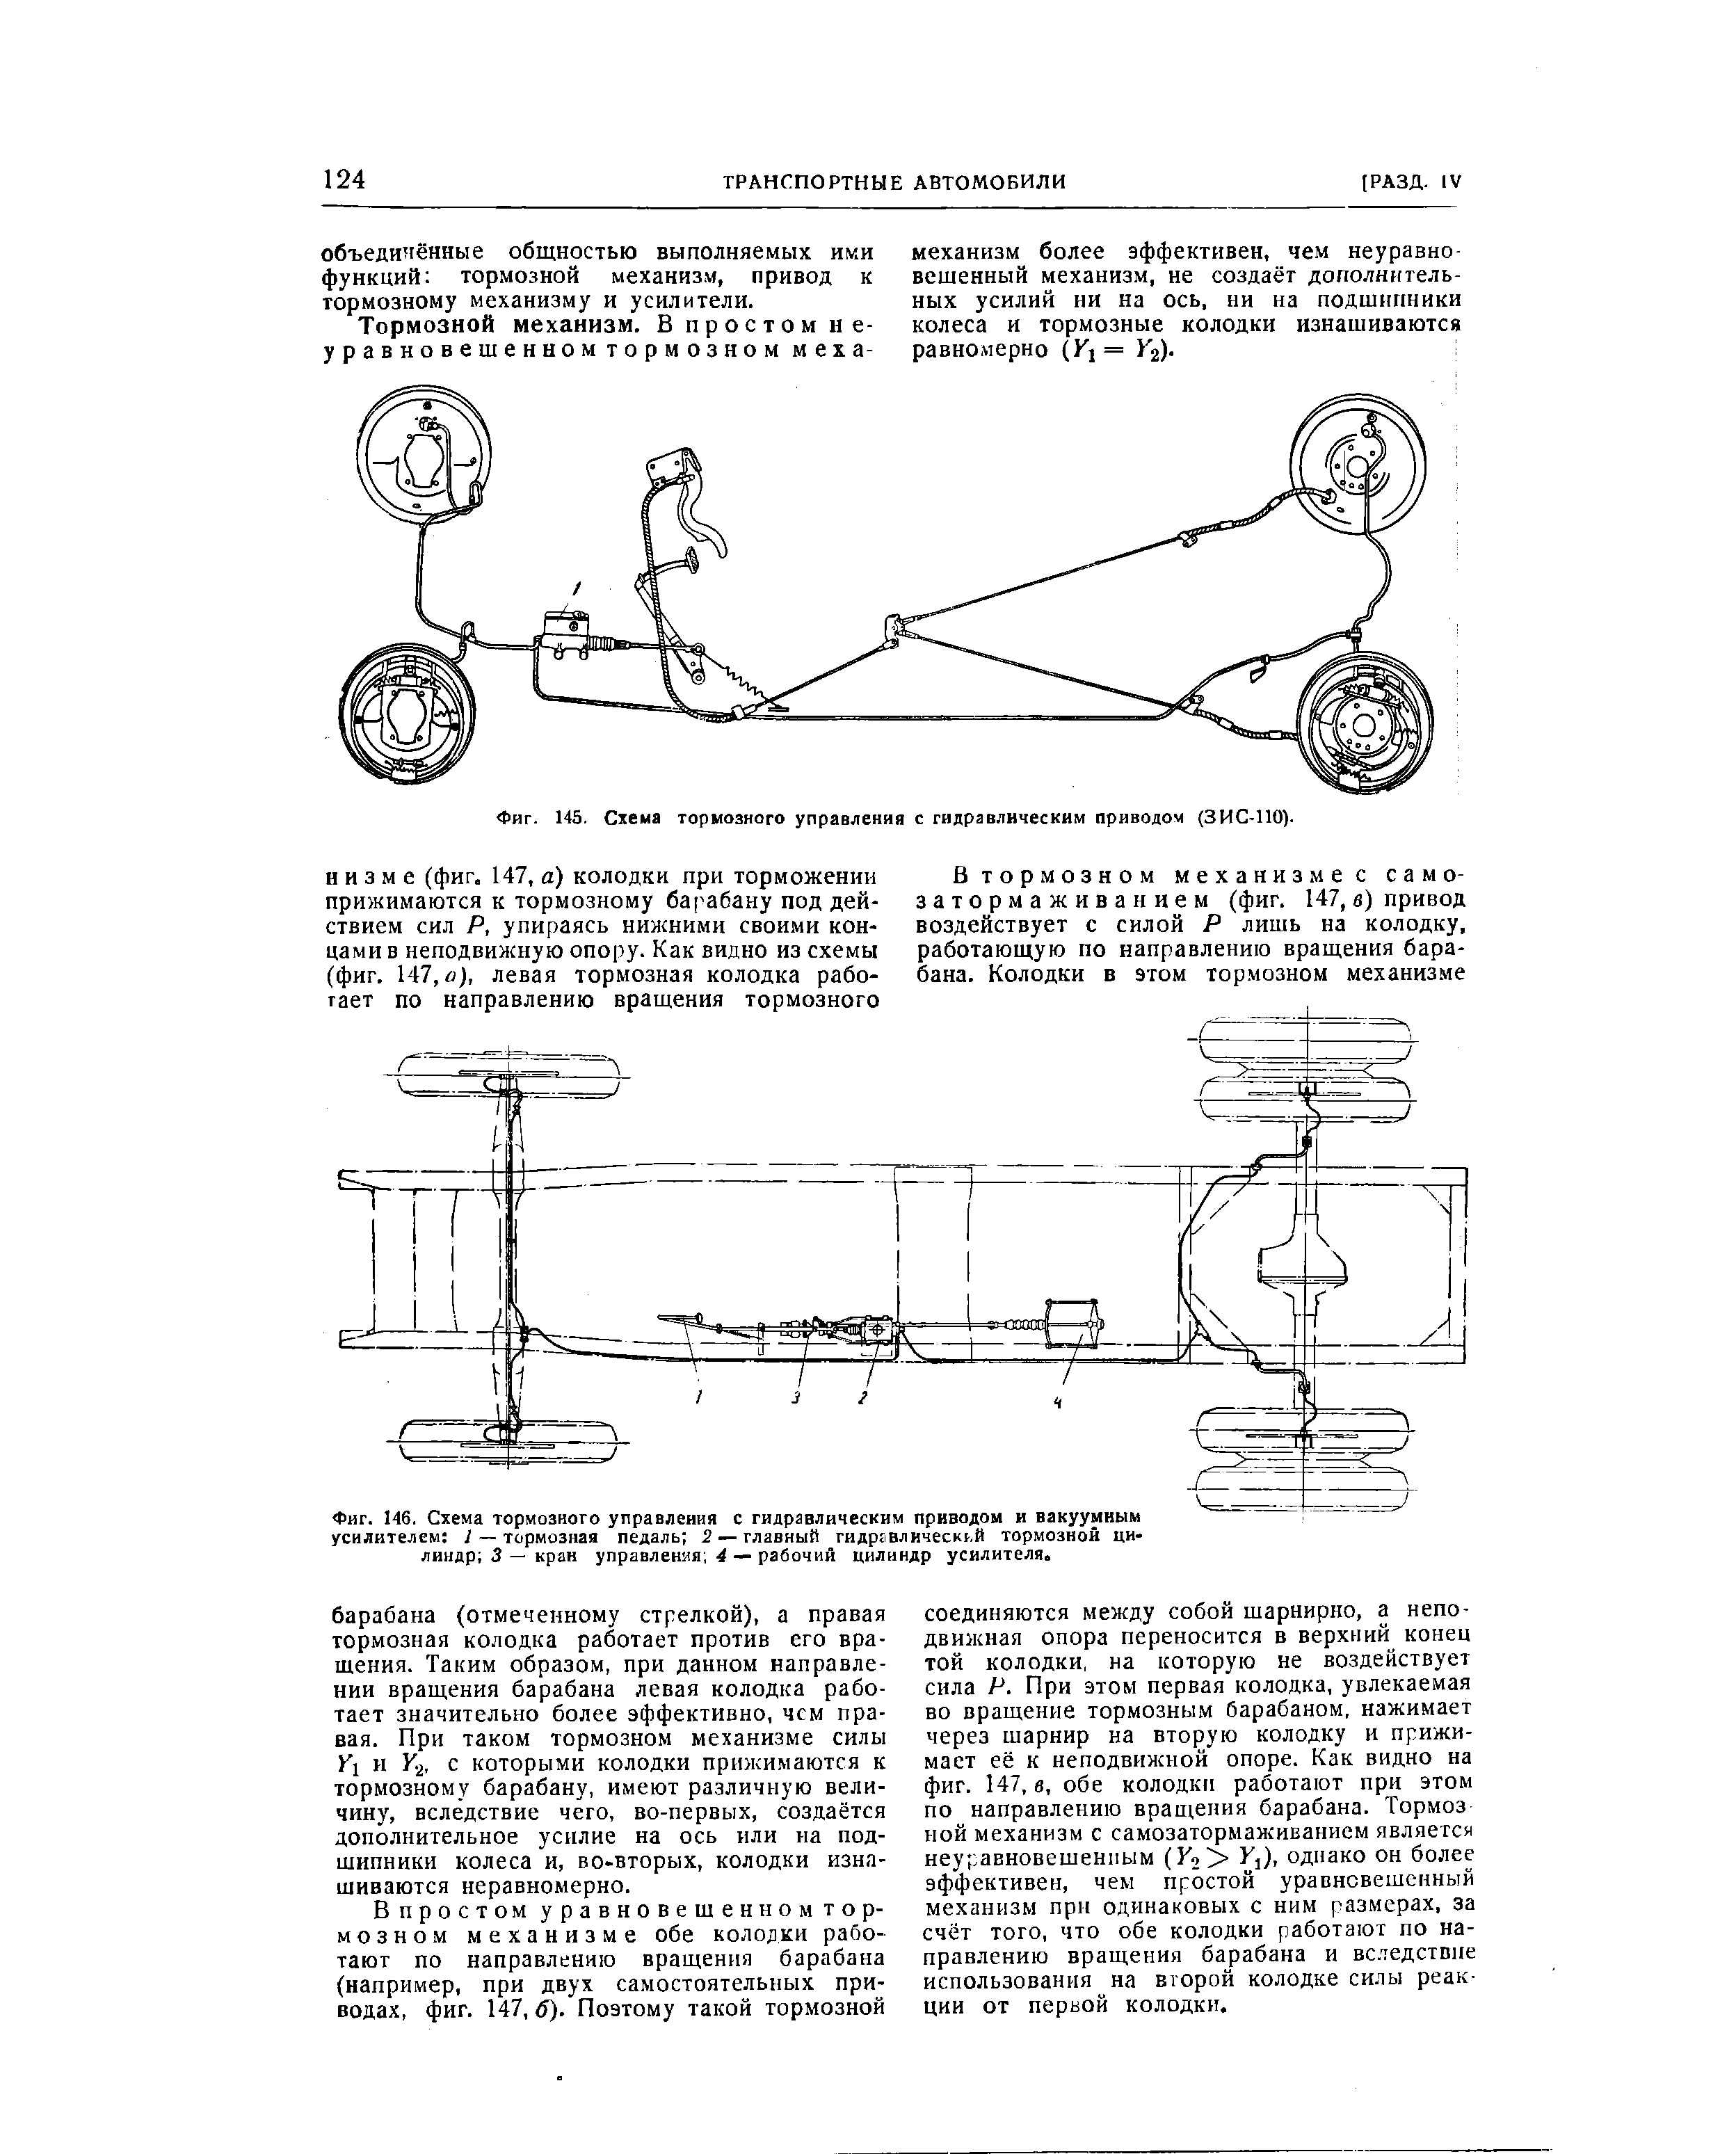 Фиг. 145. Схема тормозного управления с гидравлическим приводом (ЗИС-110).
